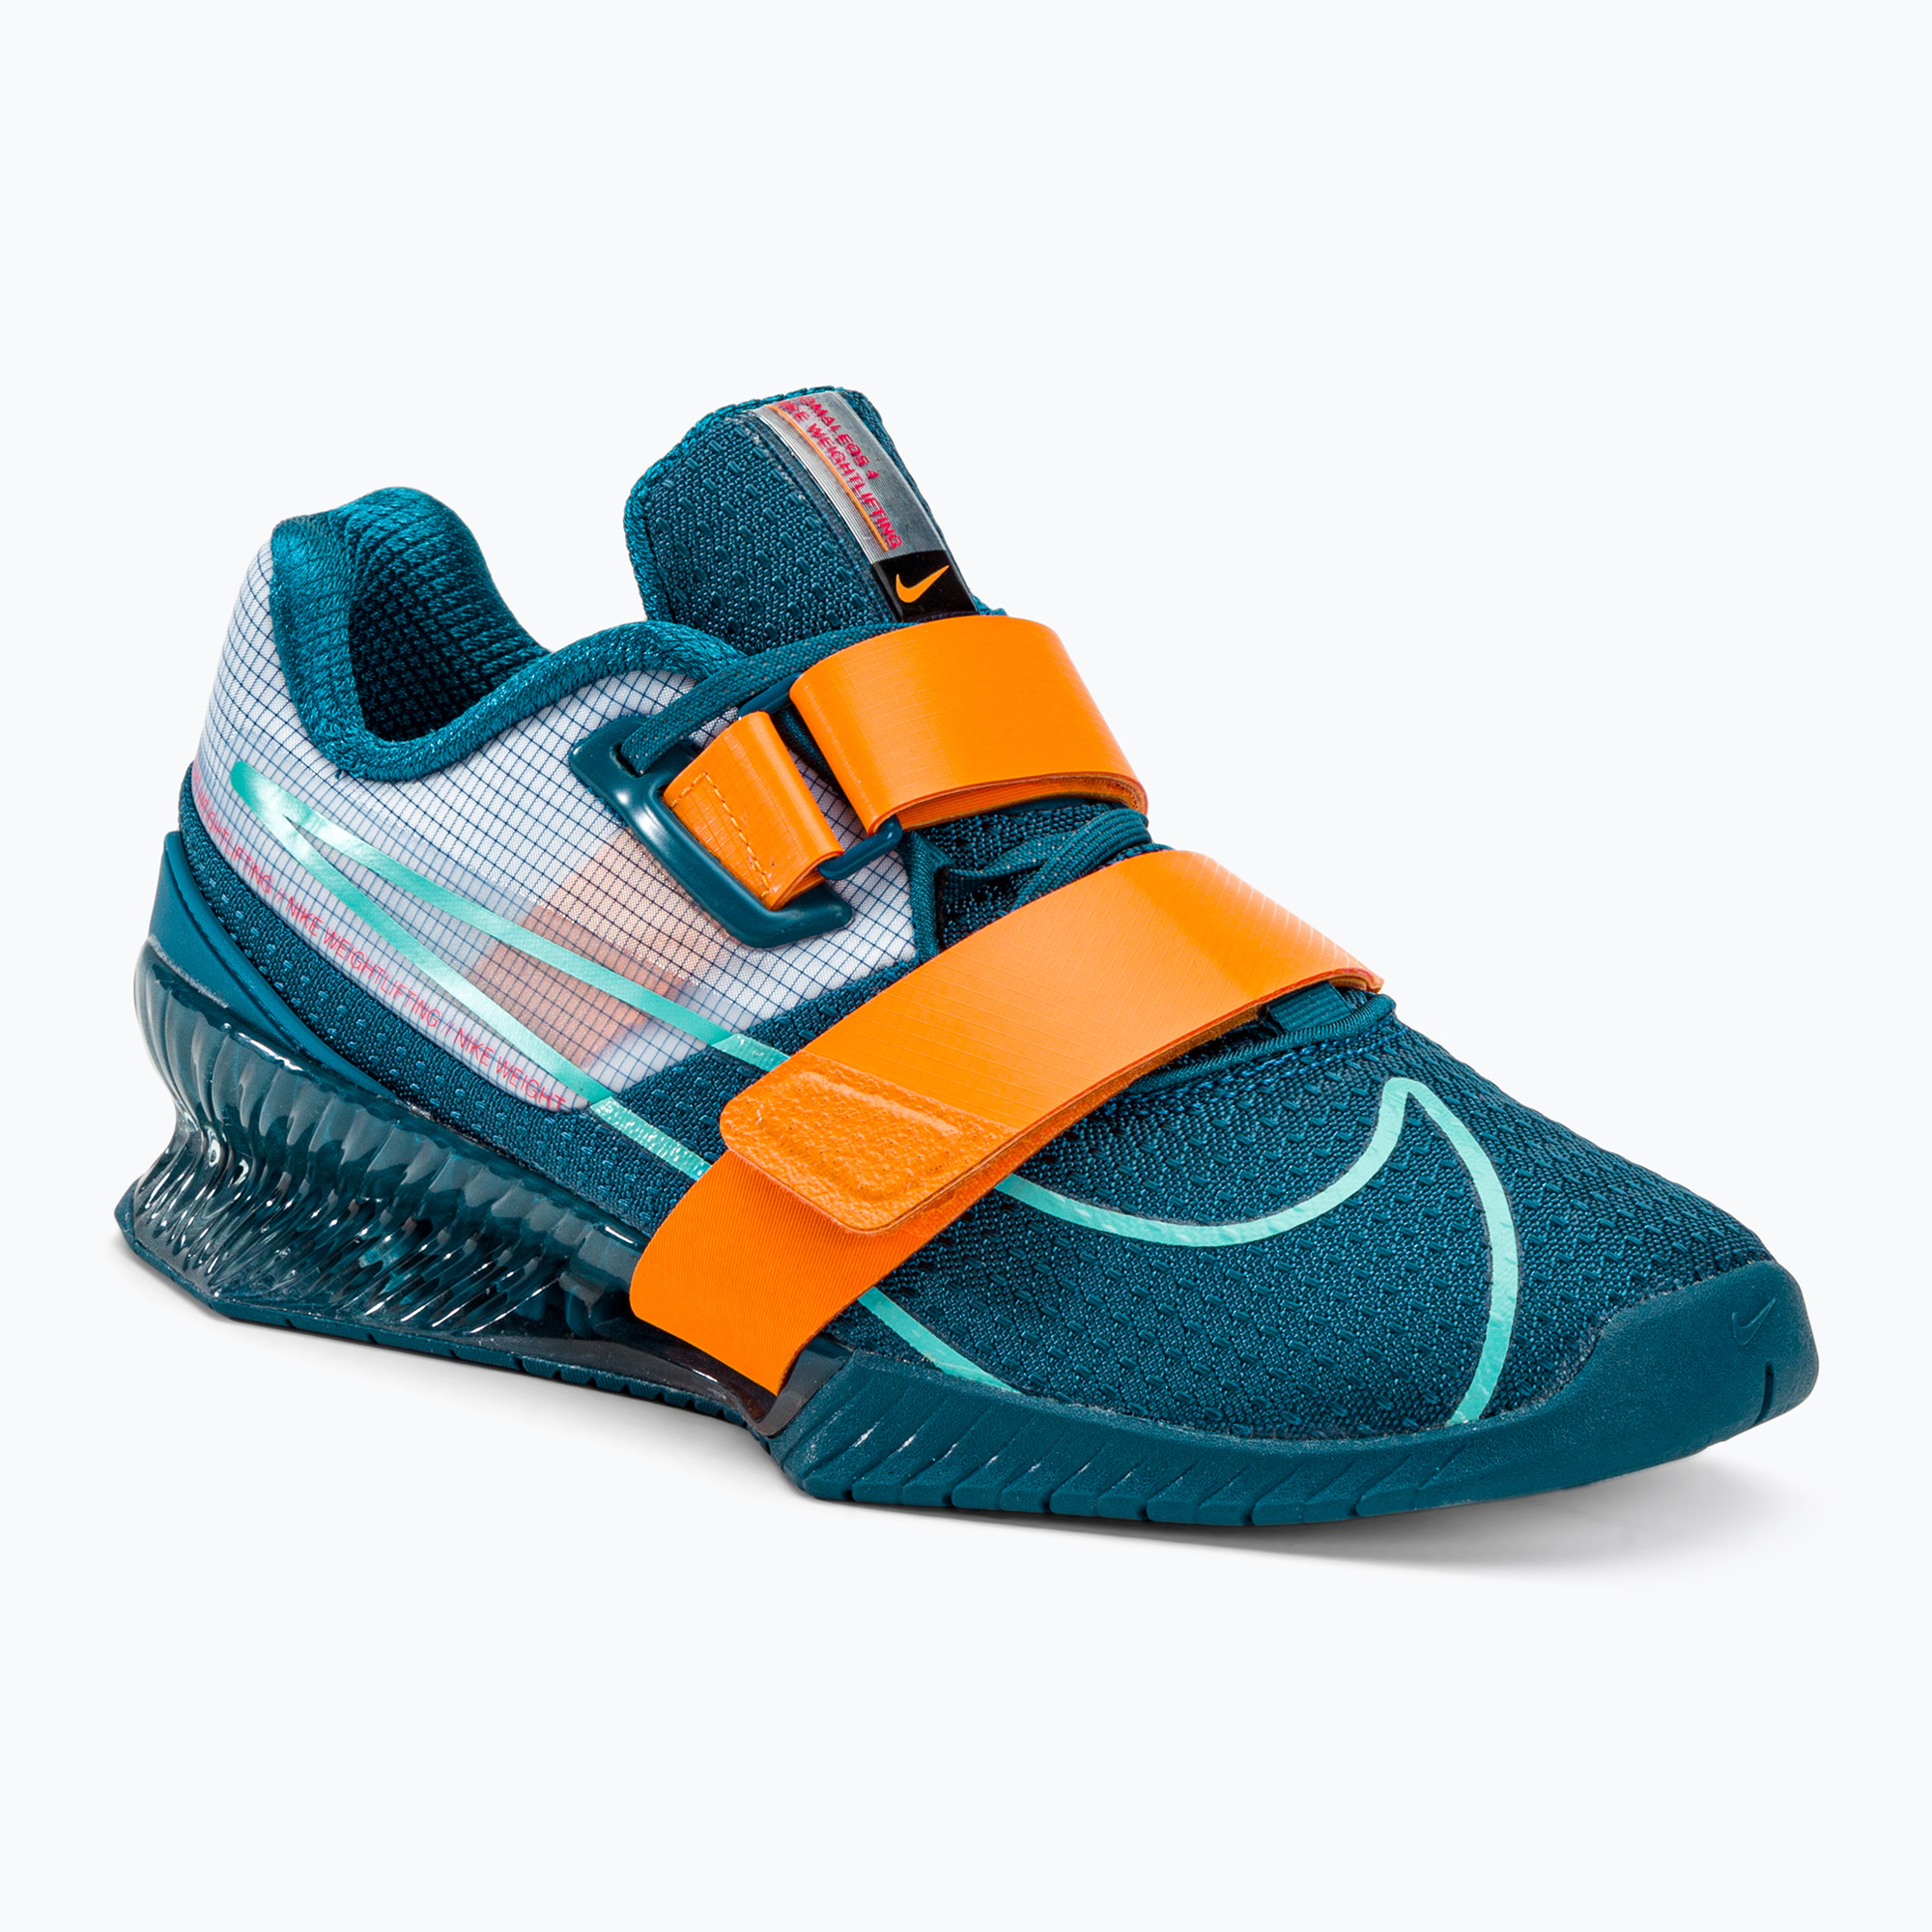 Nike Romaleos 4 modrá/oranžová vzpieračská obuv